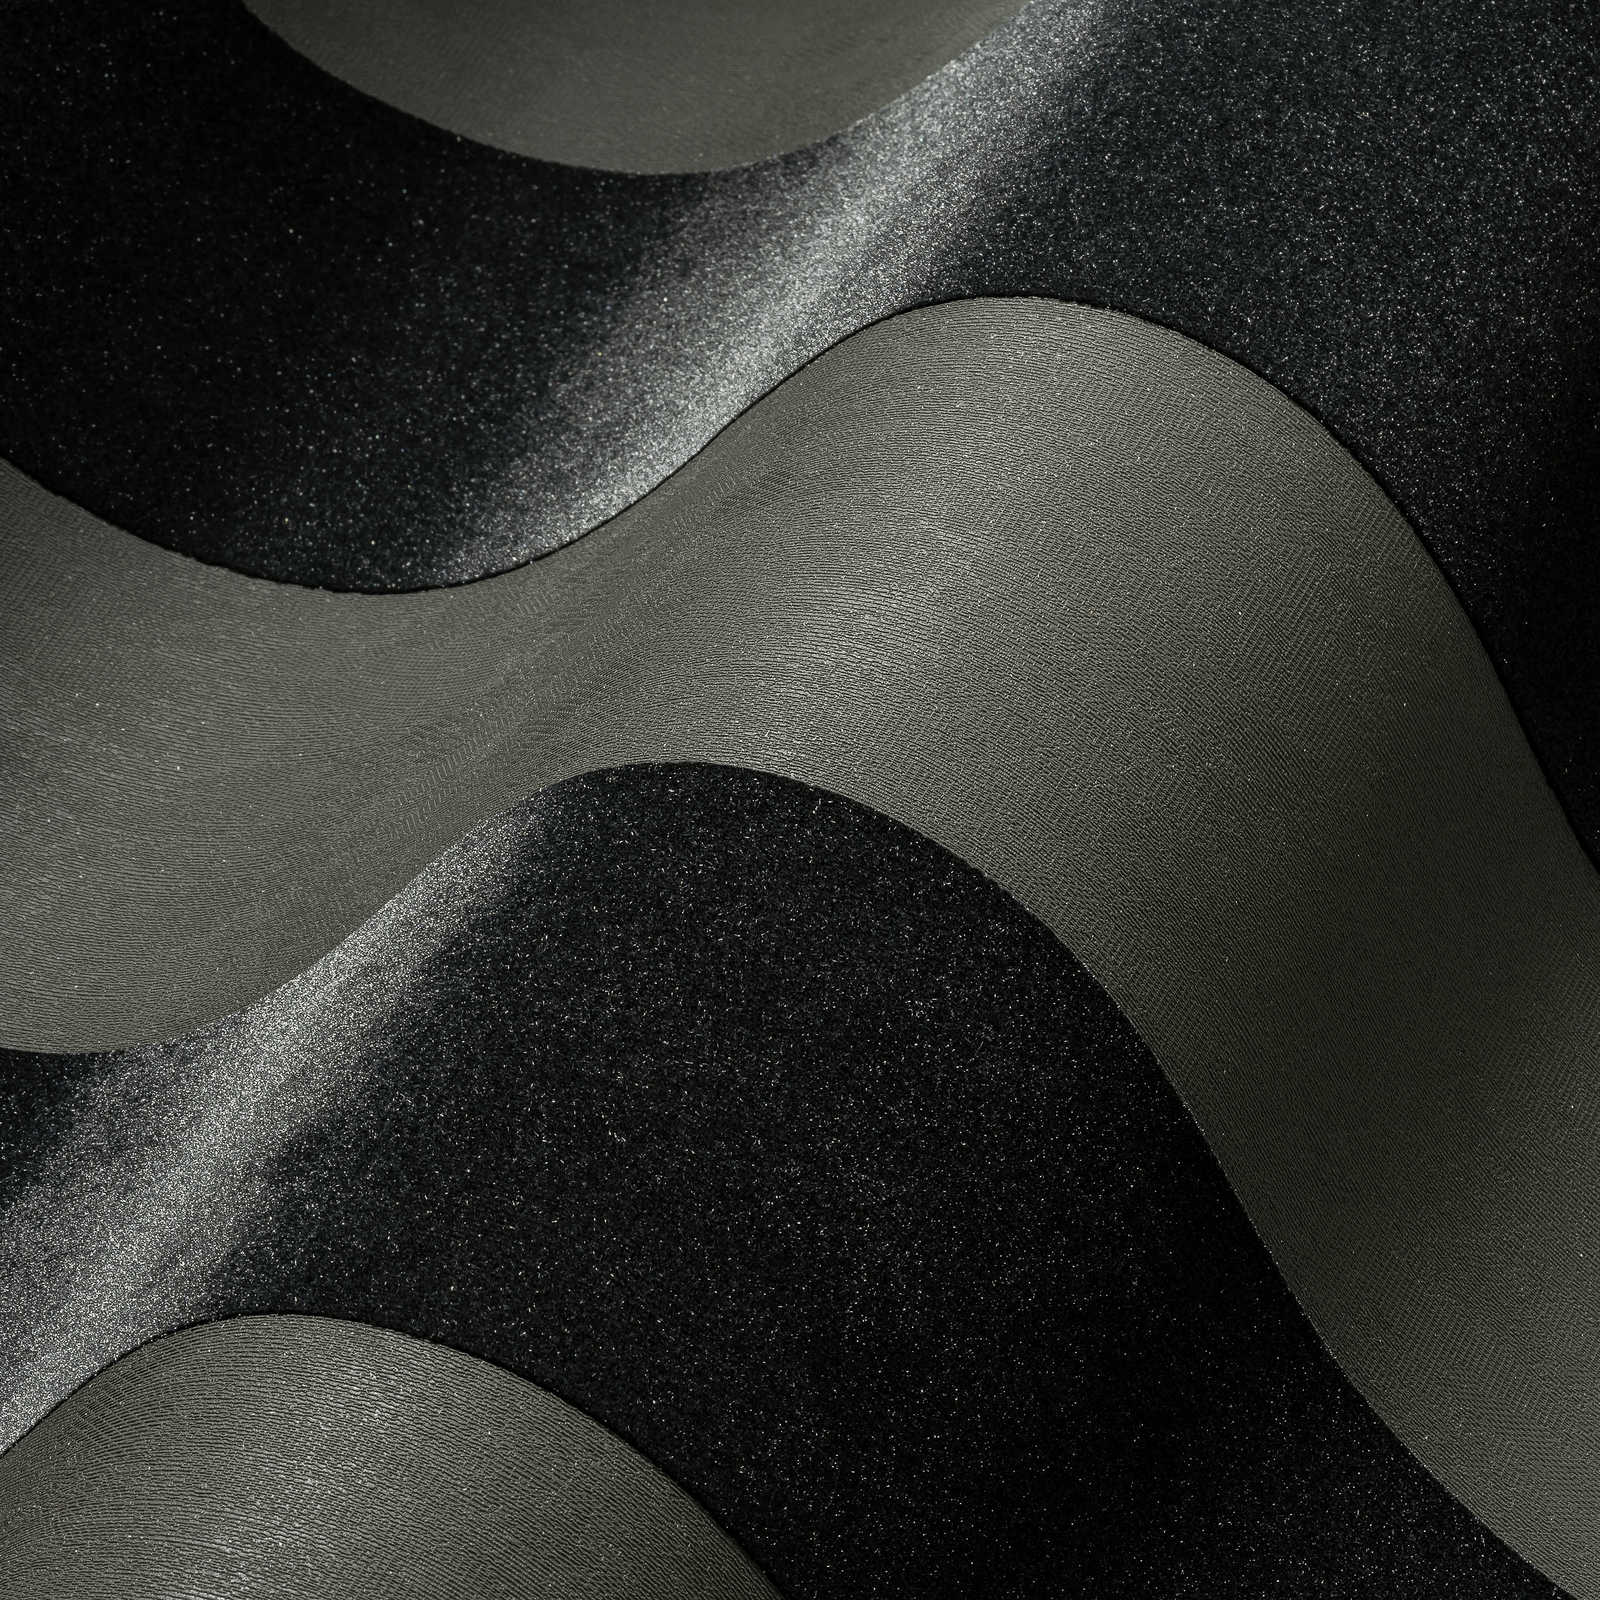             Zwart behang met blokstrepen en metallic effect
        